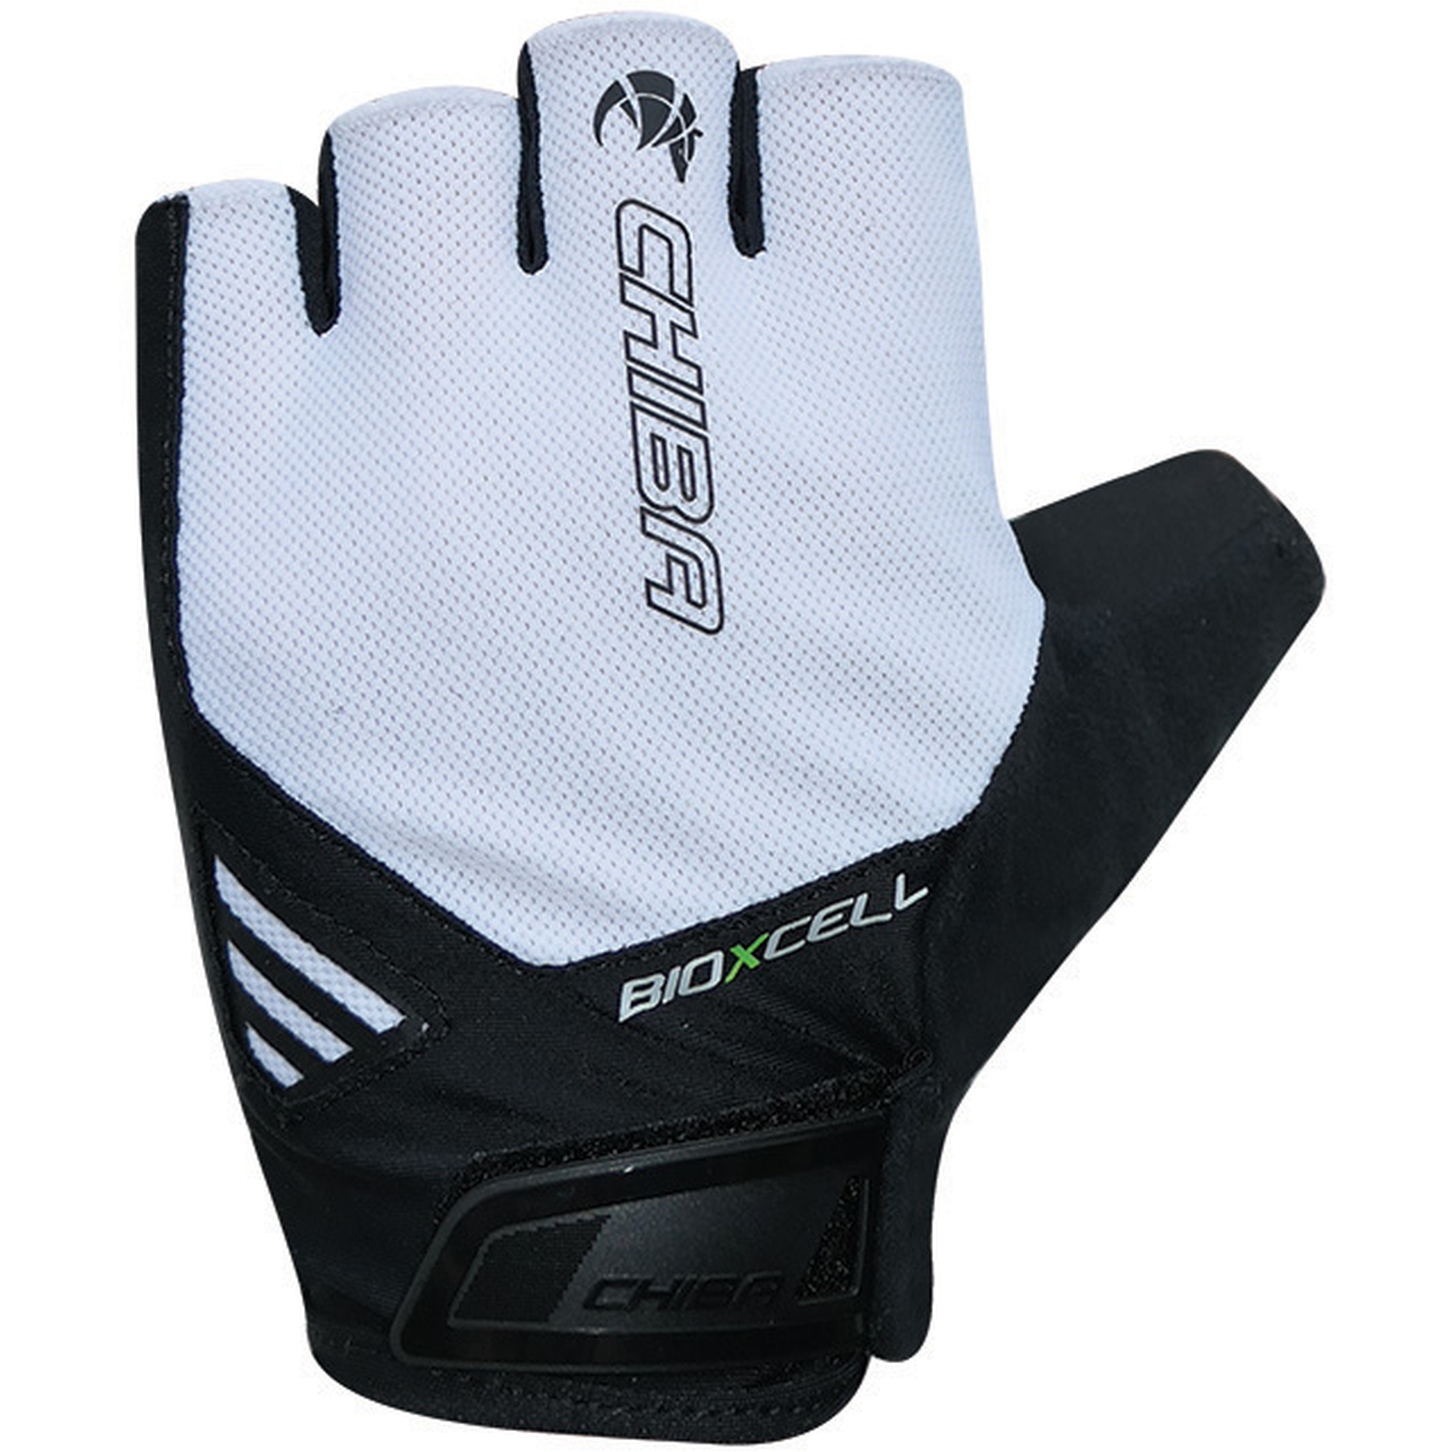 Produktbild von Chiba BioXCell Air Kurzfinger-Handschuhe - weiß